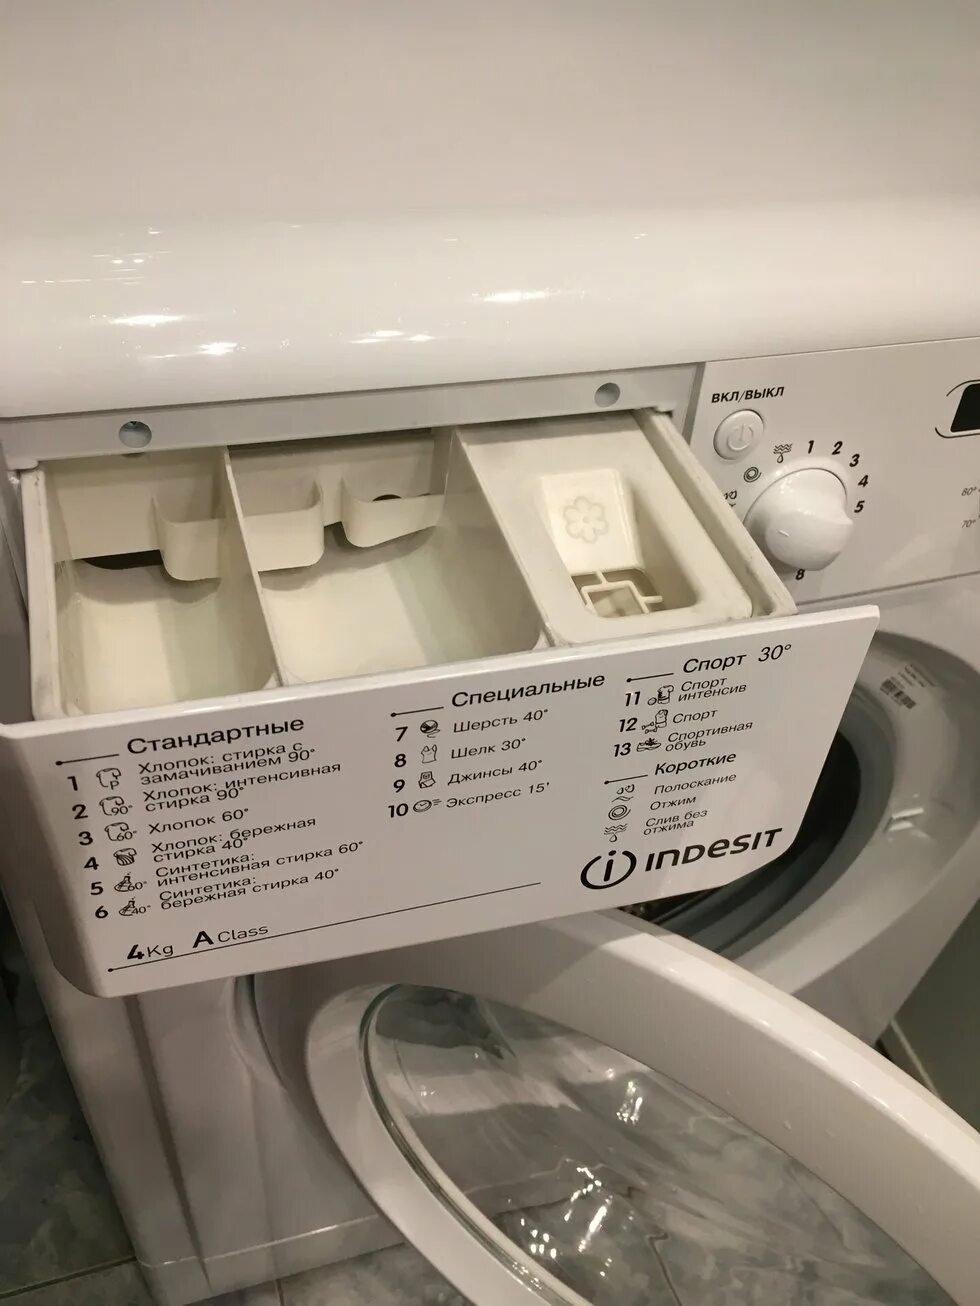 Опции стиральной машины.